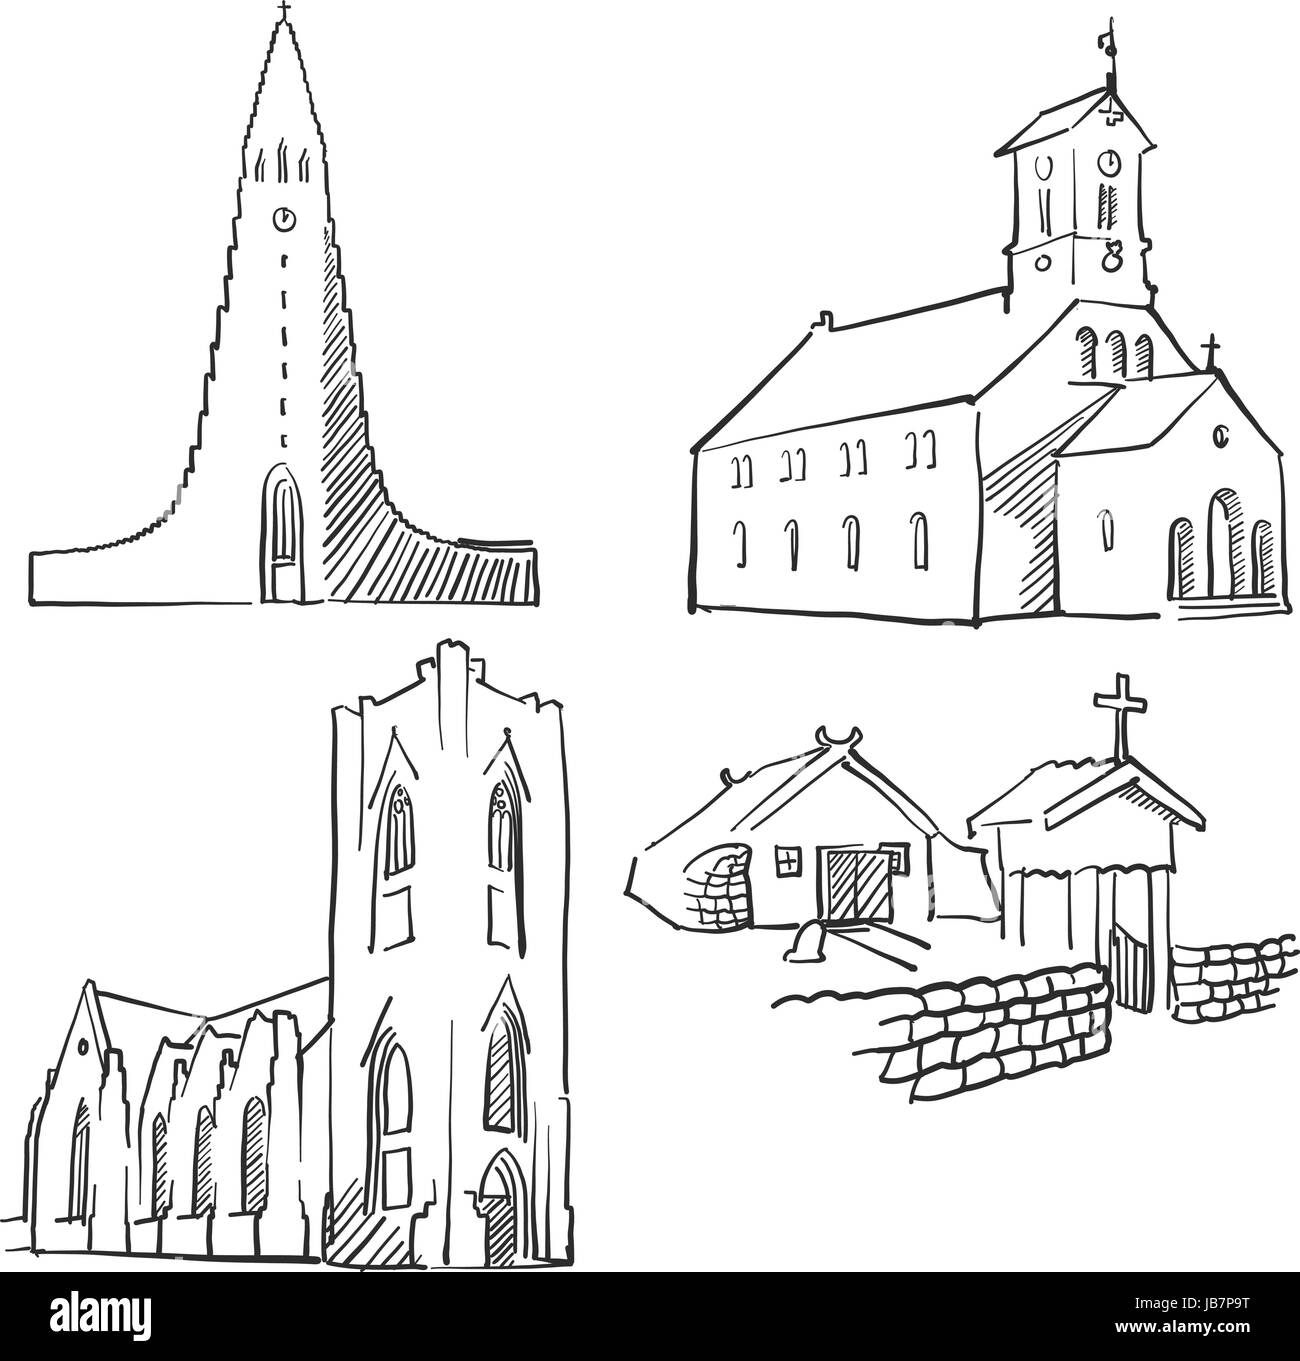 Reykjavik Islande célèbres bâtiments, monuments, Voyage décrit Monochrome Scalable Vector Illustration Illustration de Vecteur